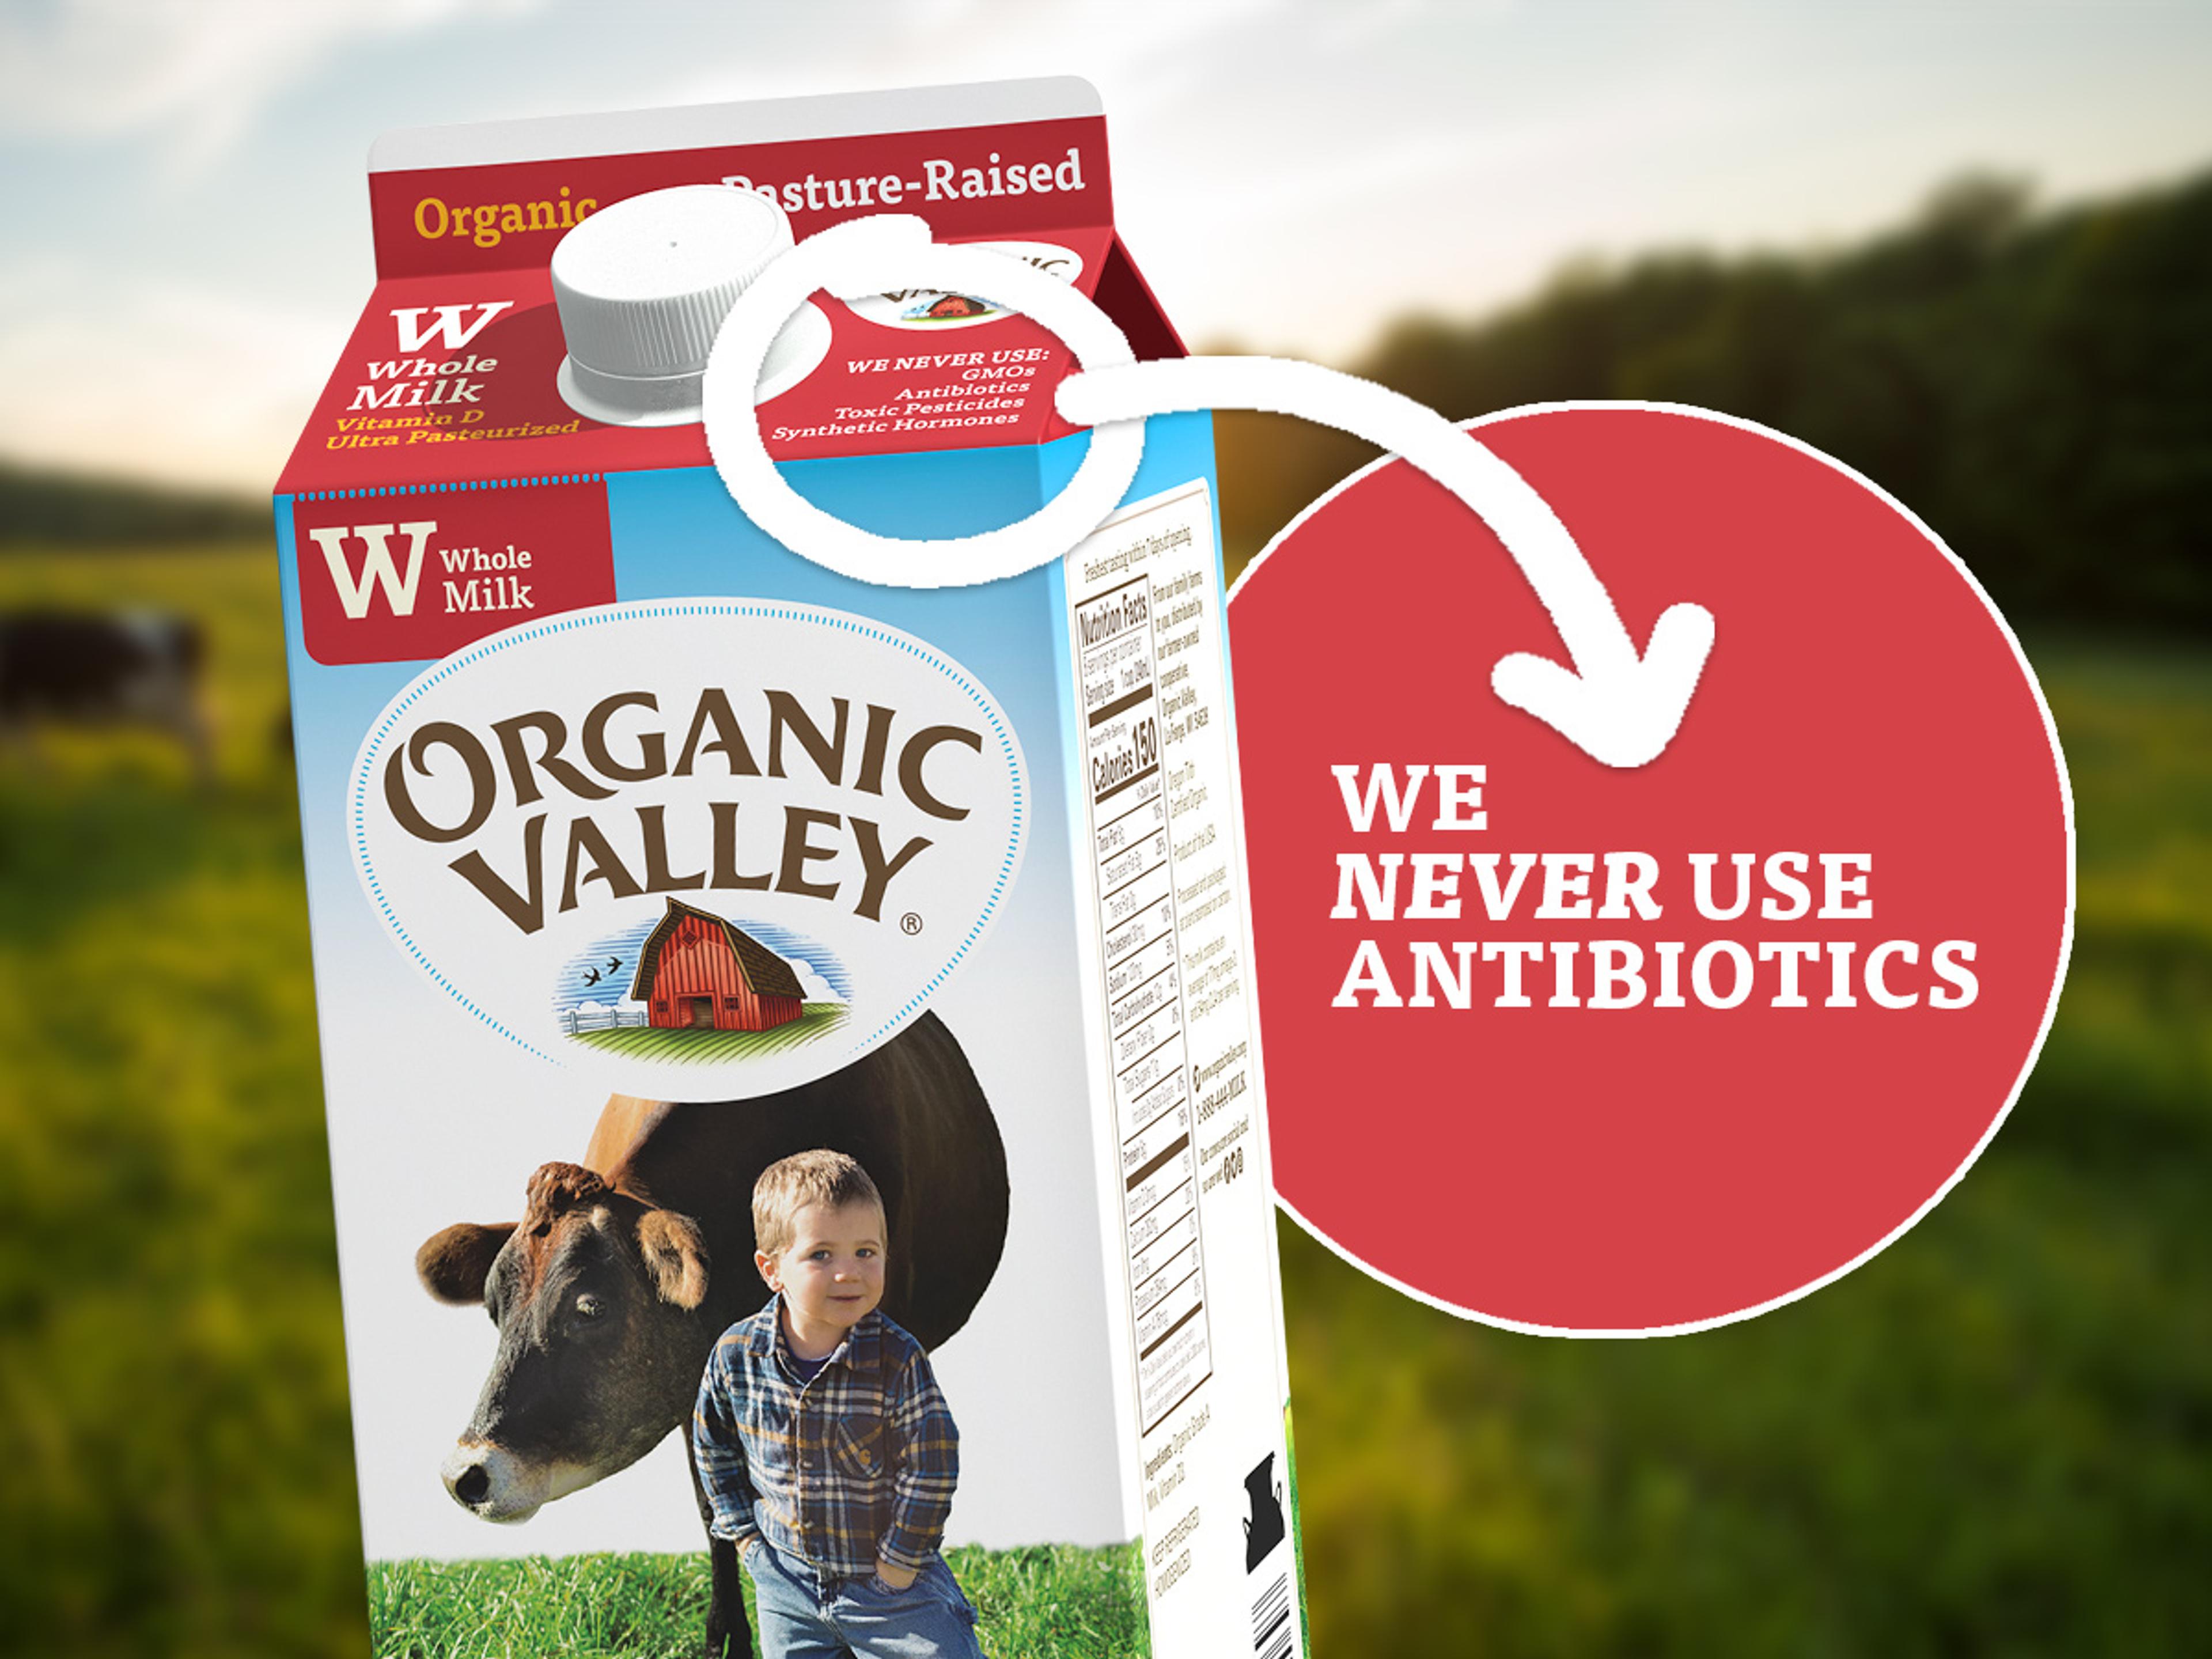 A carton of Organic Valley milk.